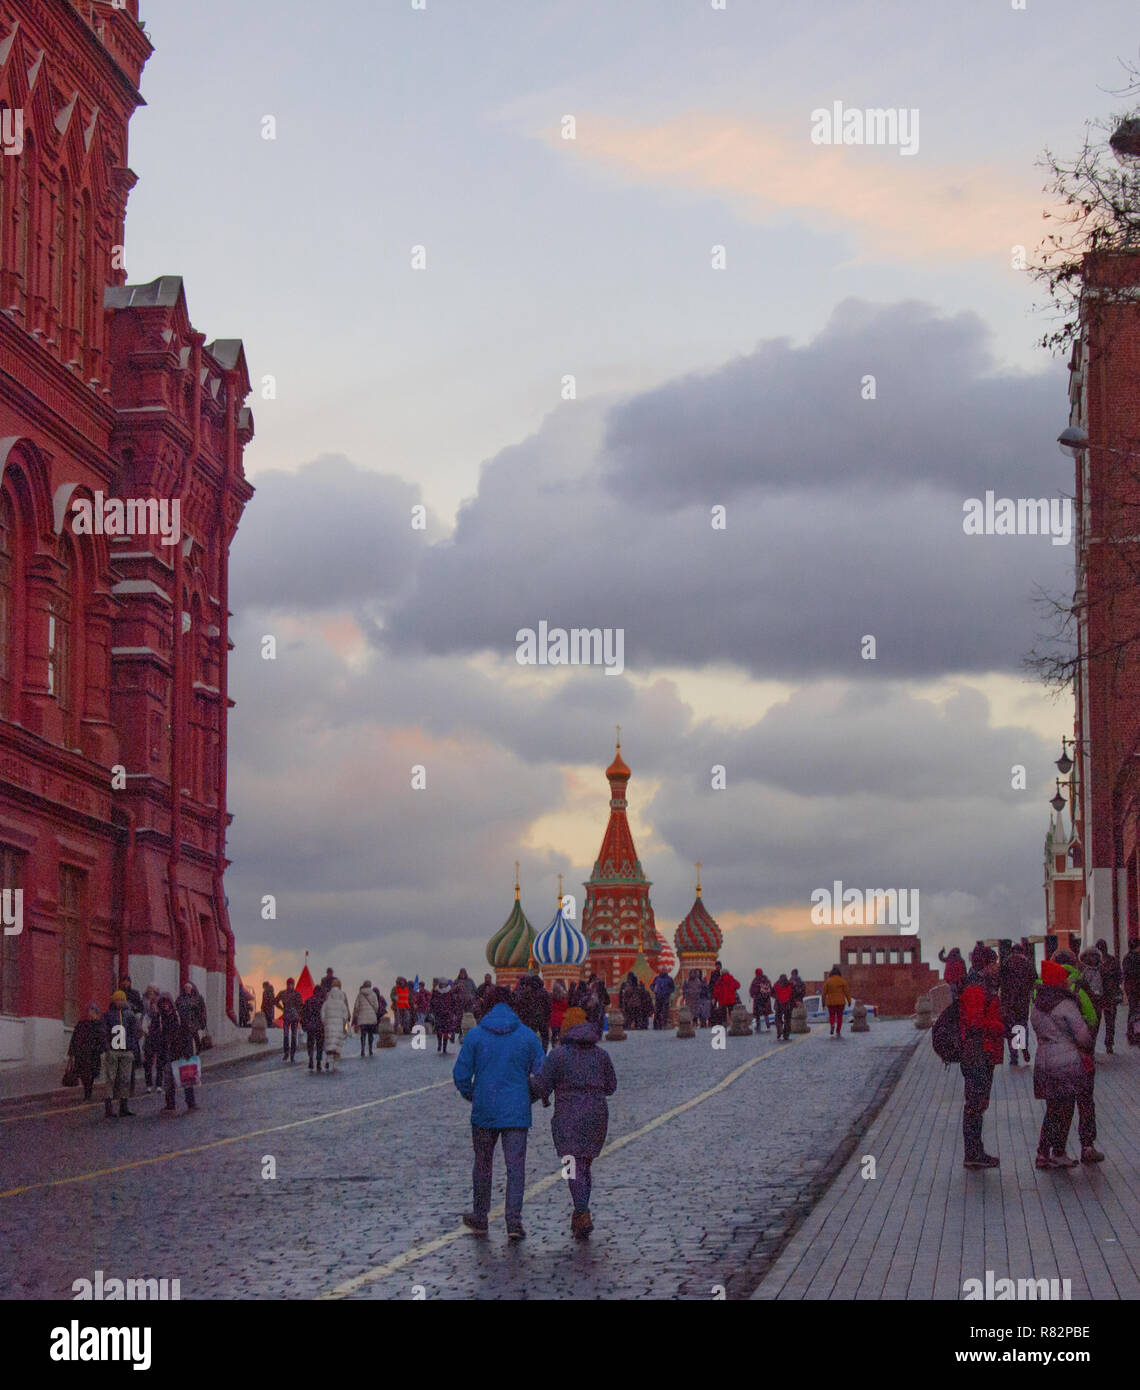 Moscou, Fédération de Russie, la cathédrale de San Basilio, connue pour ses dômes colorés, sur la Place Rouge Banque D'Images